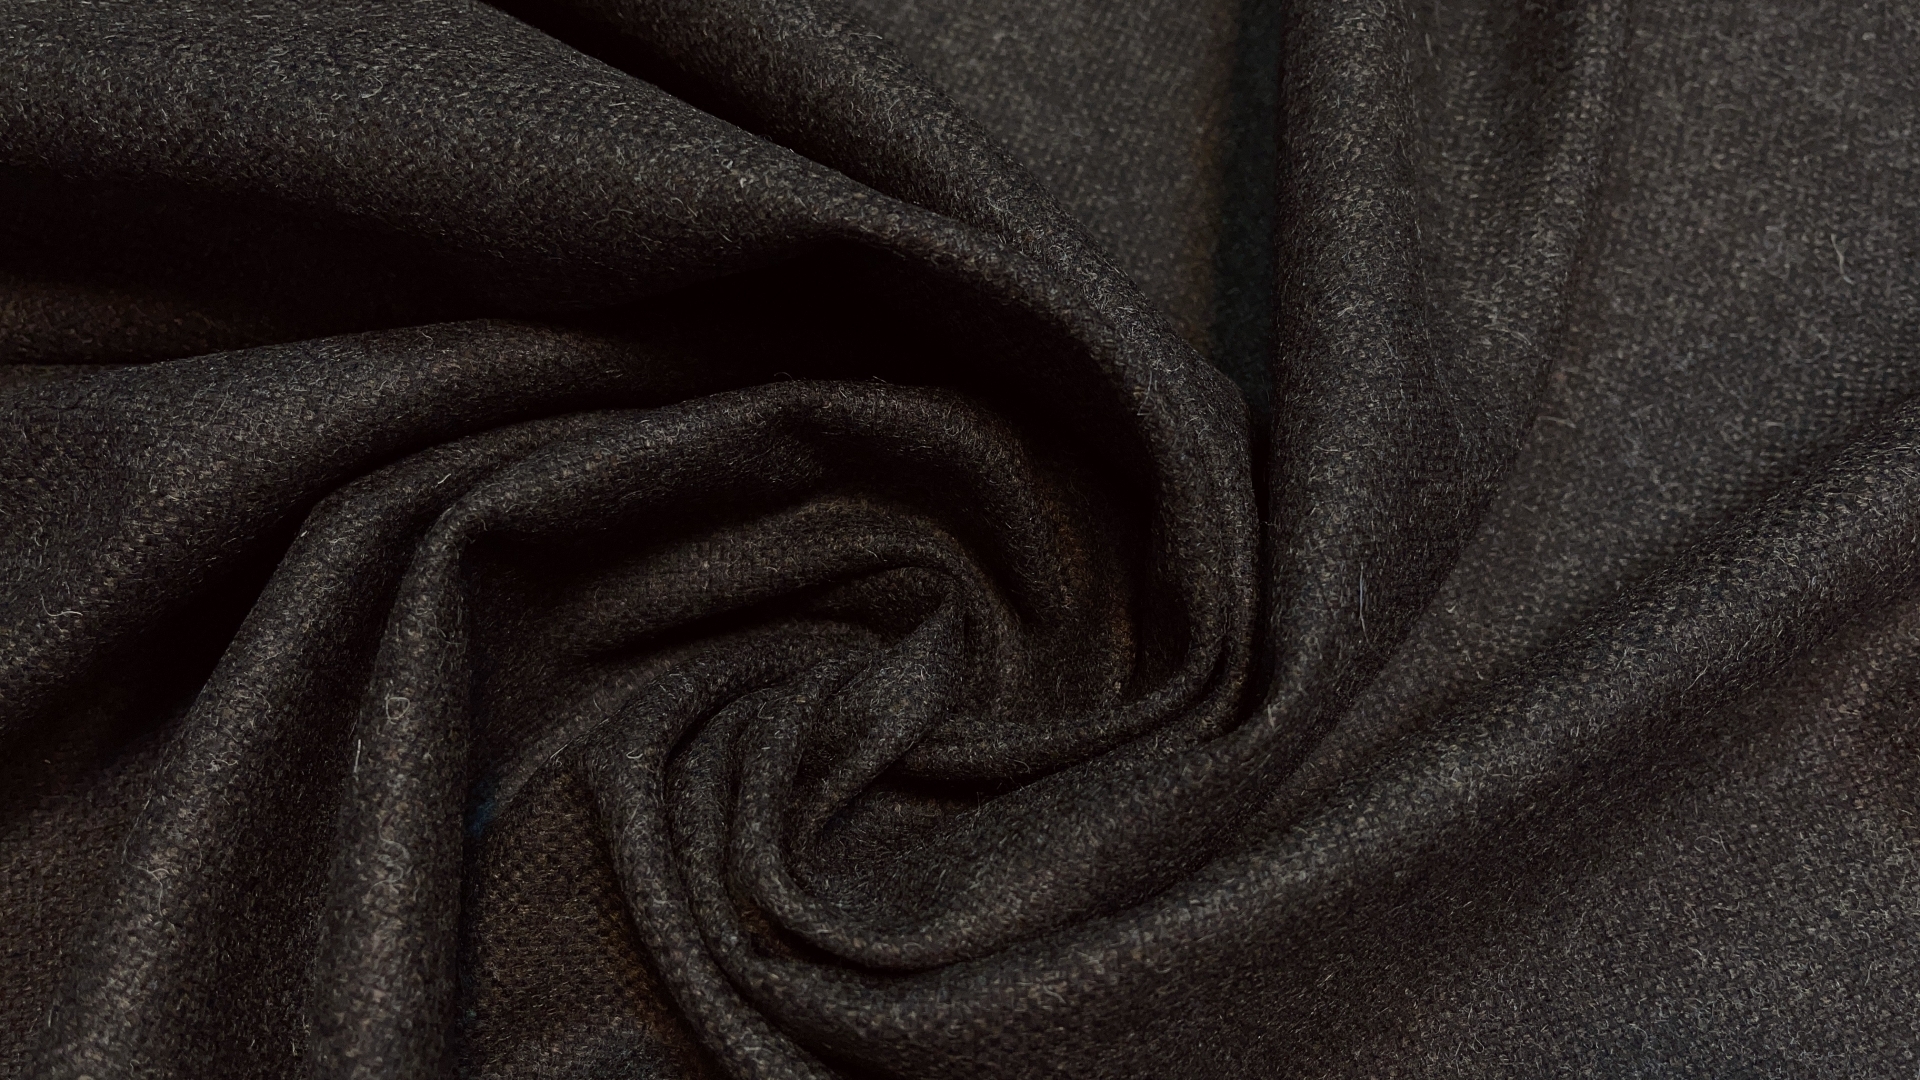 Костюмная ткань твидовой выработки, сочетание чёрных и шоколадных нитей. Шоколадные нити не яркие, приглушённые. Идеальный вариант для тёплого пиджака или легкого пальто.